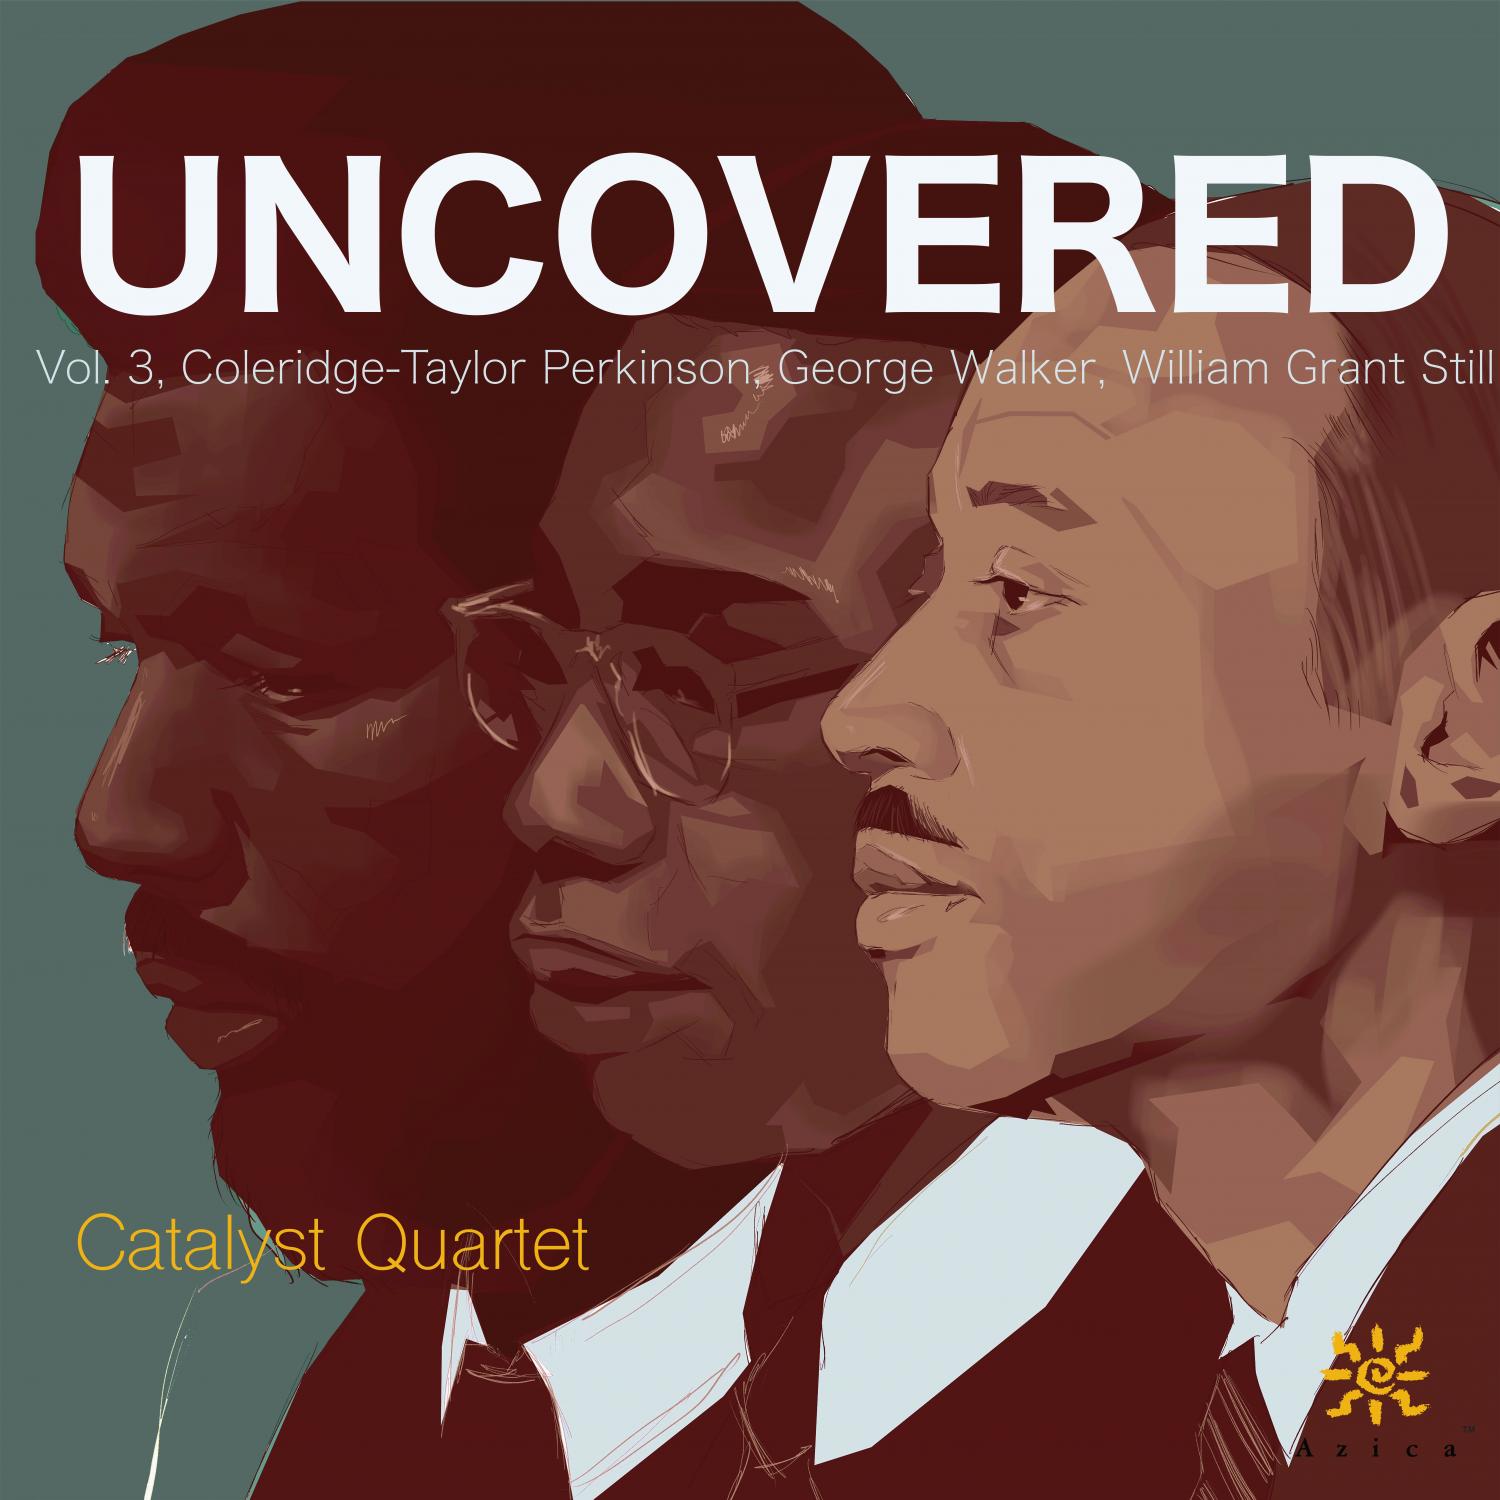 Album cover art from the Catalyst String Quartet